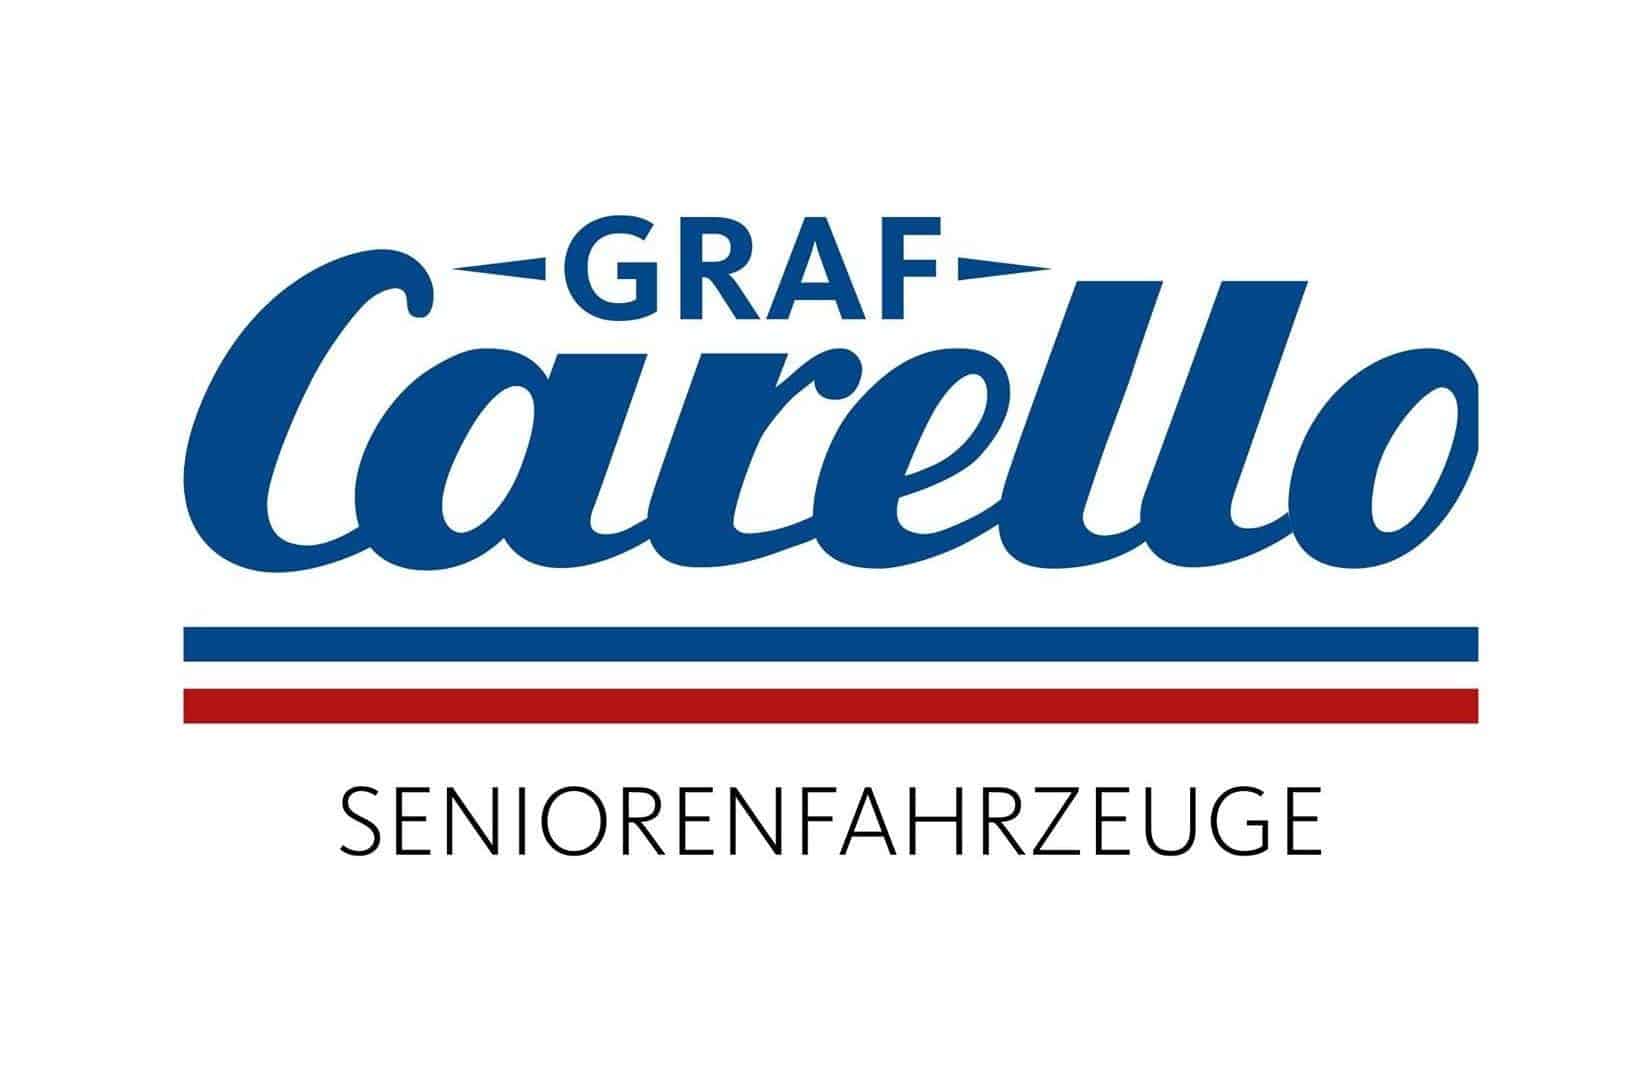 Graf Carello logo